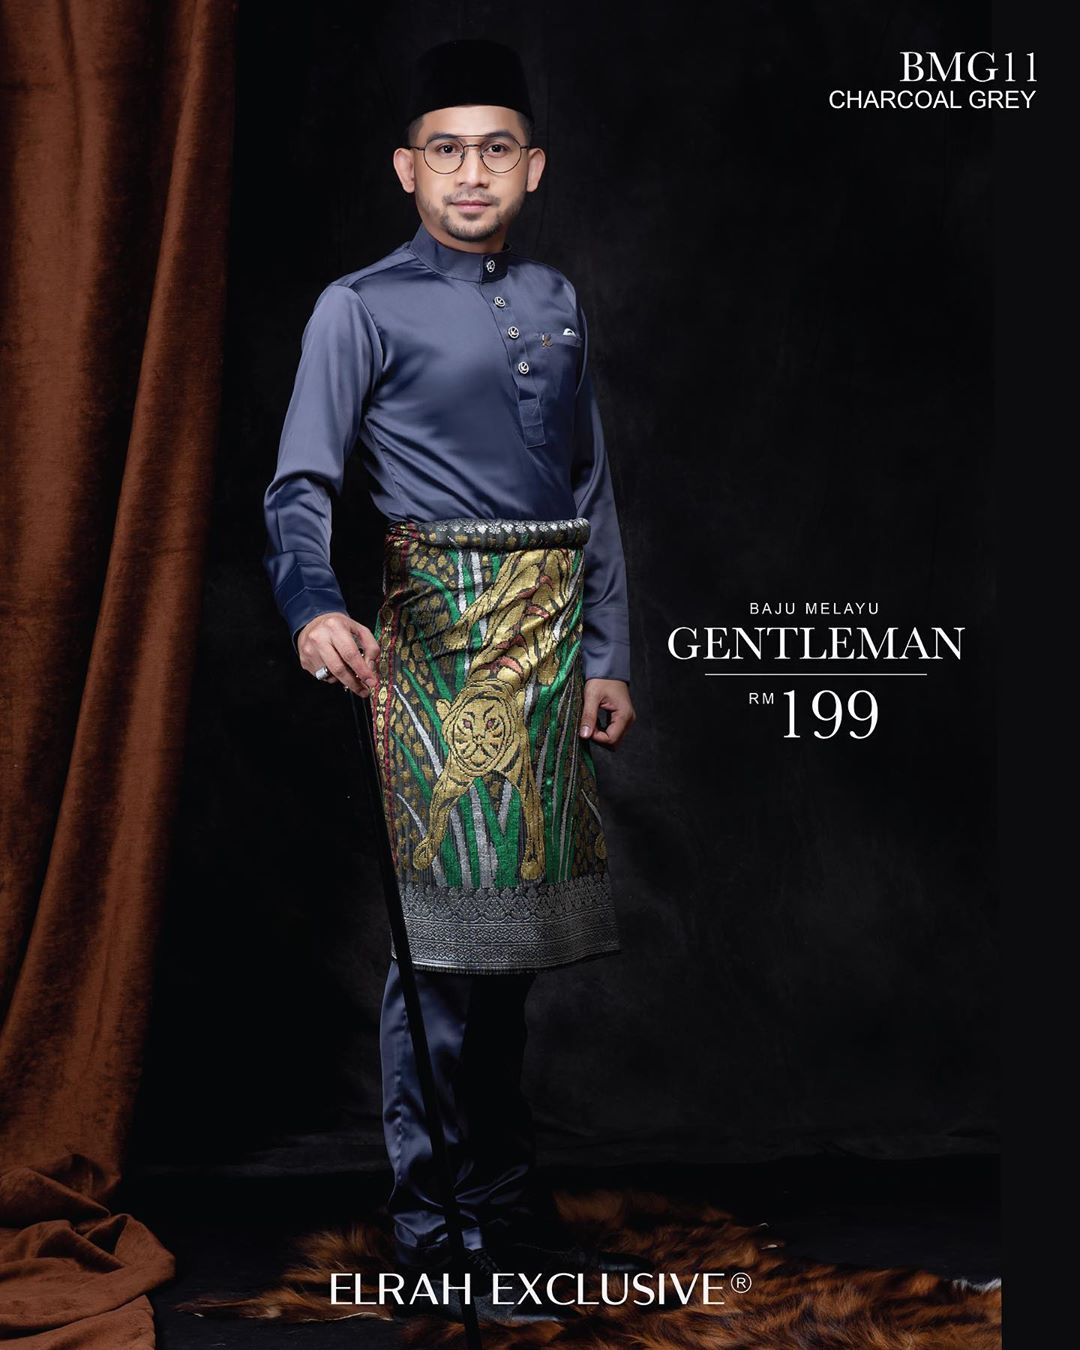 Baju Melayu Gentleman Charcoal Grey